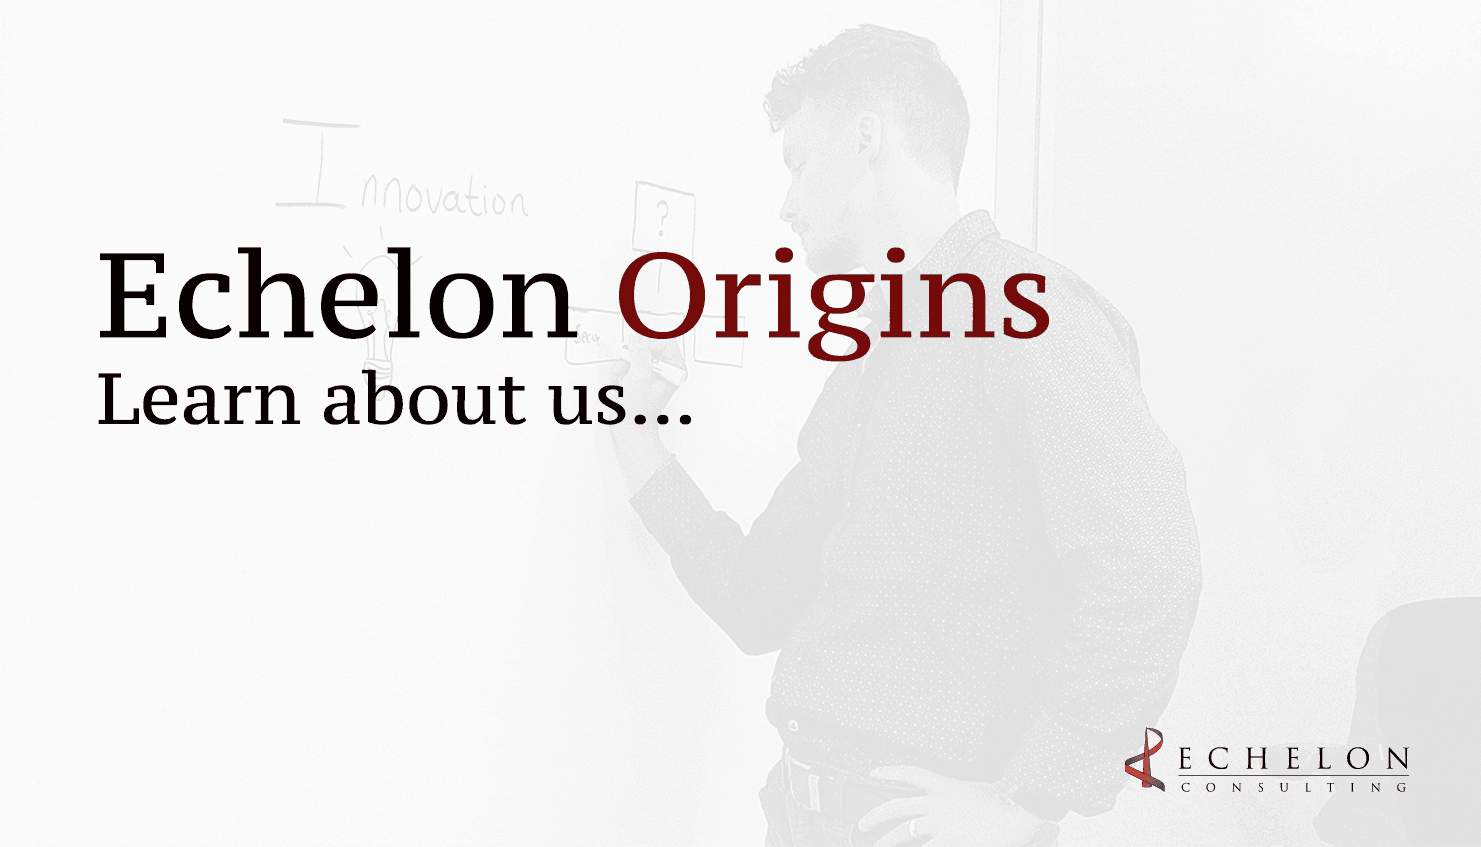 Echelon origins: Learn about us...